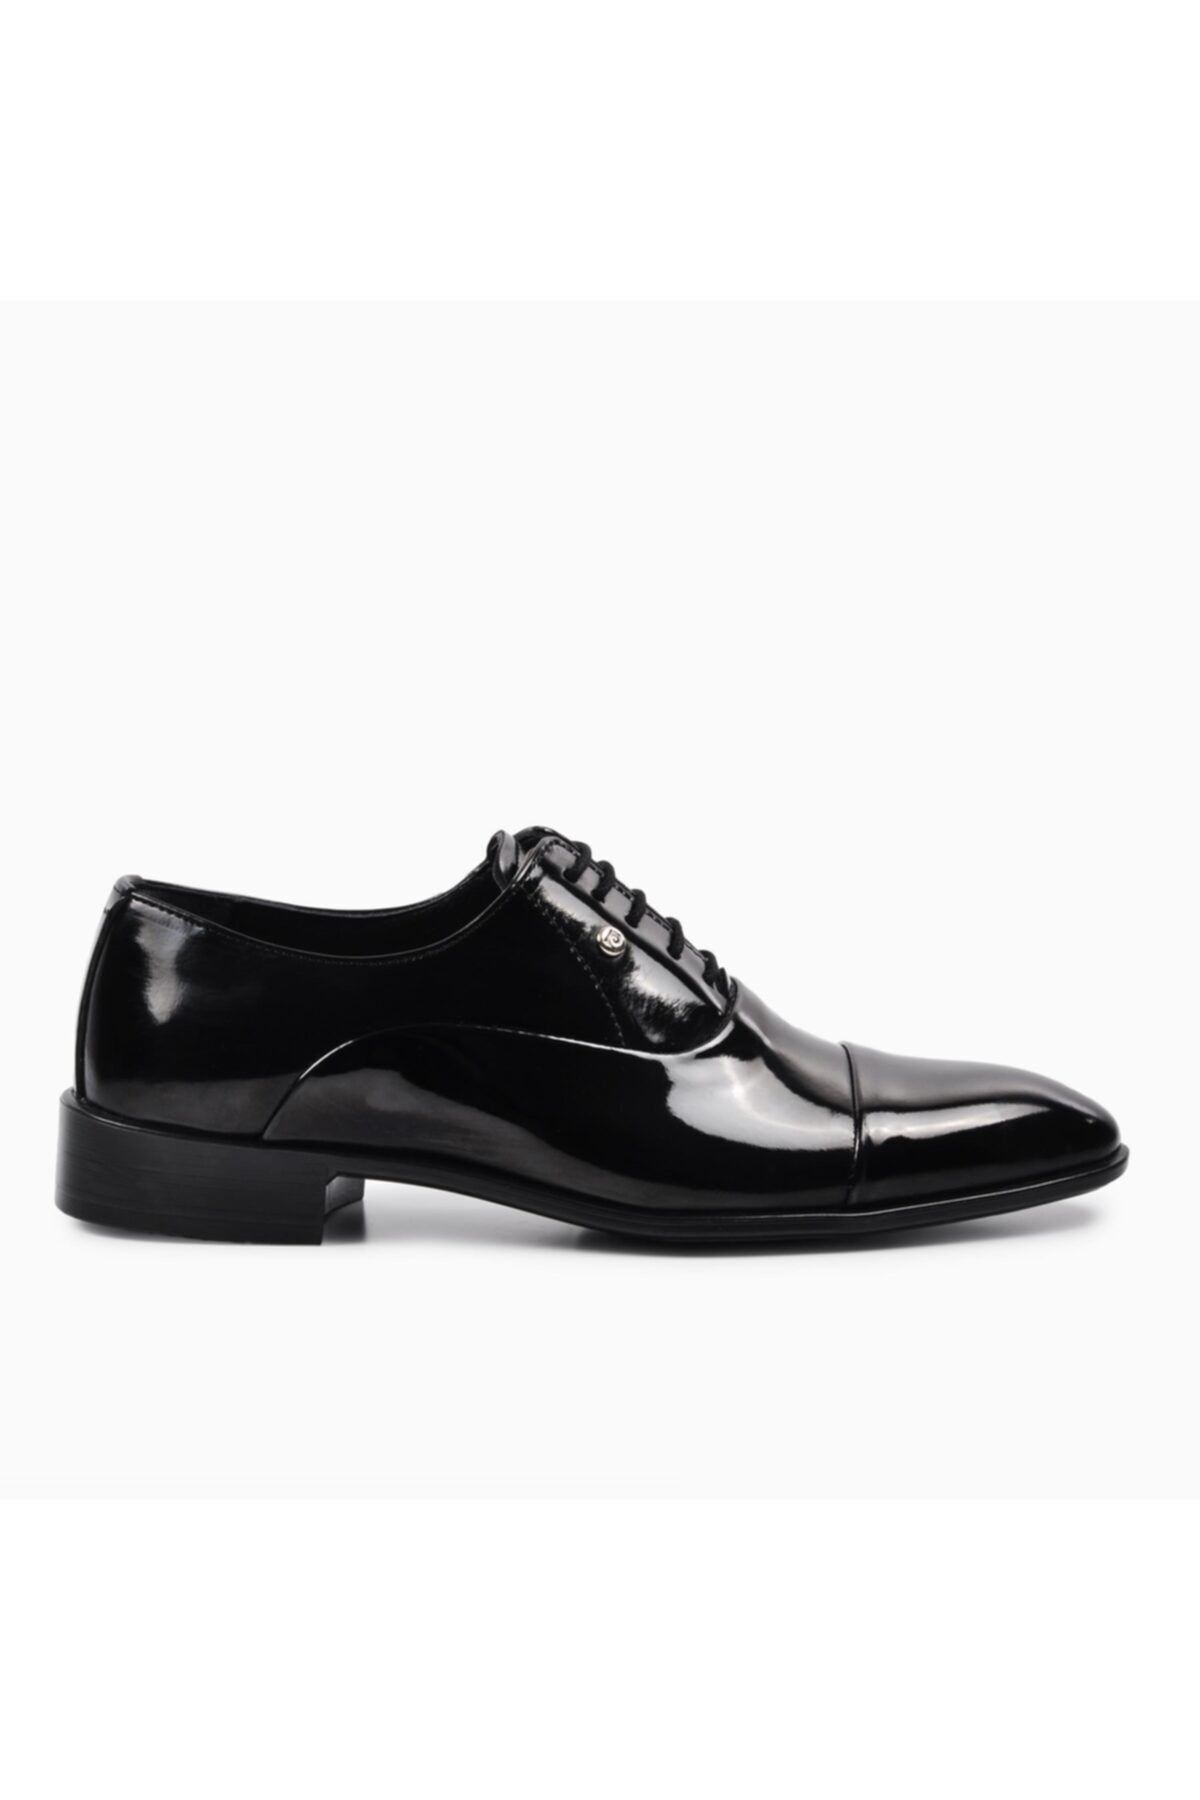 کفش کلاسیک مردانه چرمی پیر کاردین Pierre Cardin (برند فرانسه)